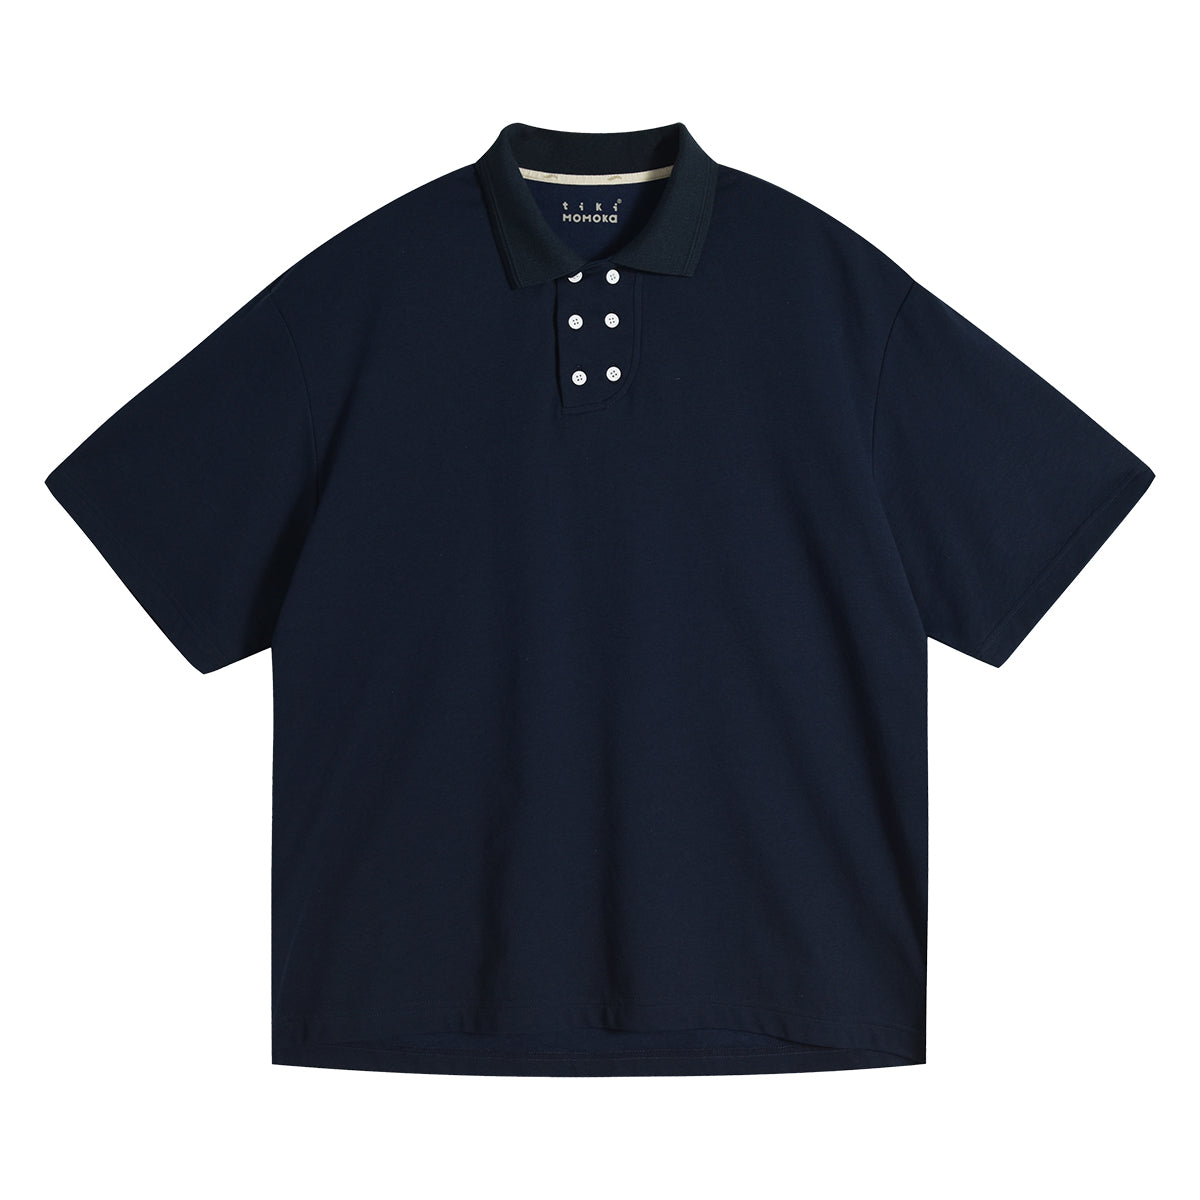 TIKIMOMOKA オリジナルダブルブレストポロシャツ TKM014